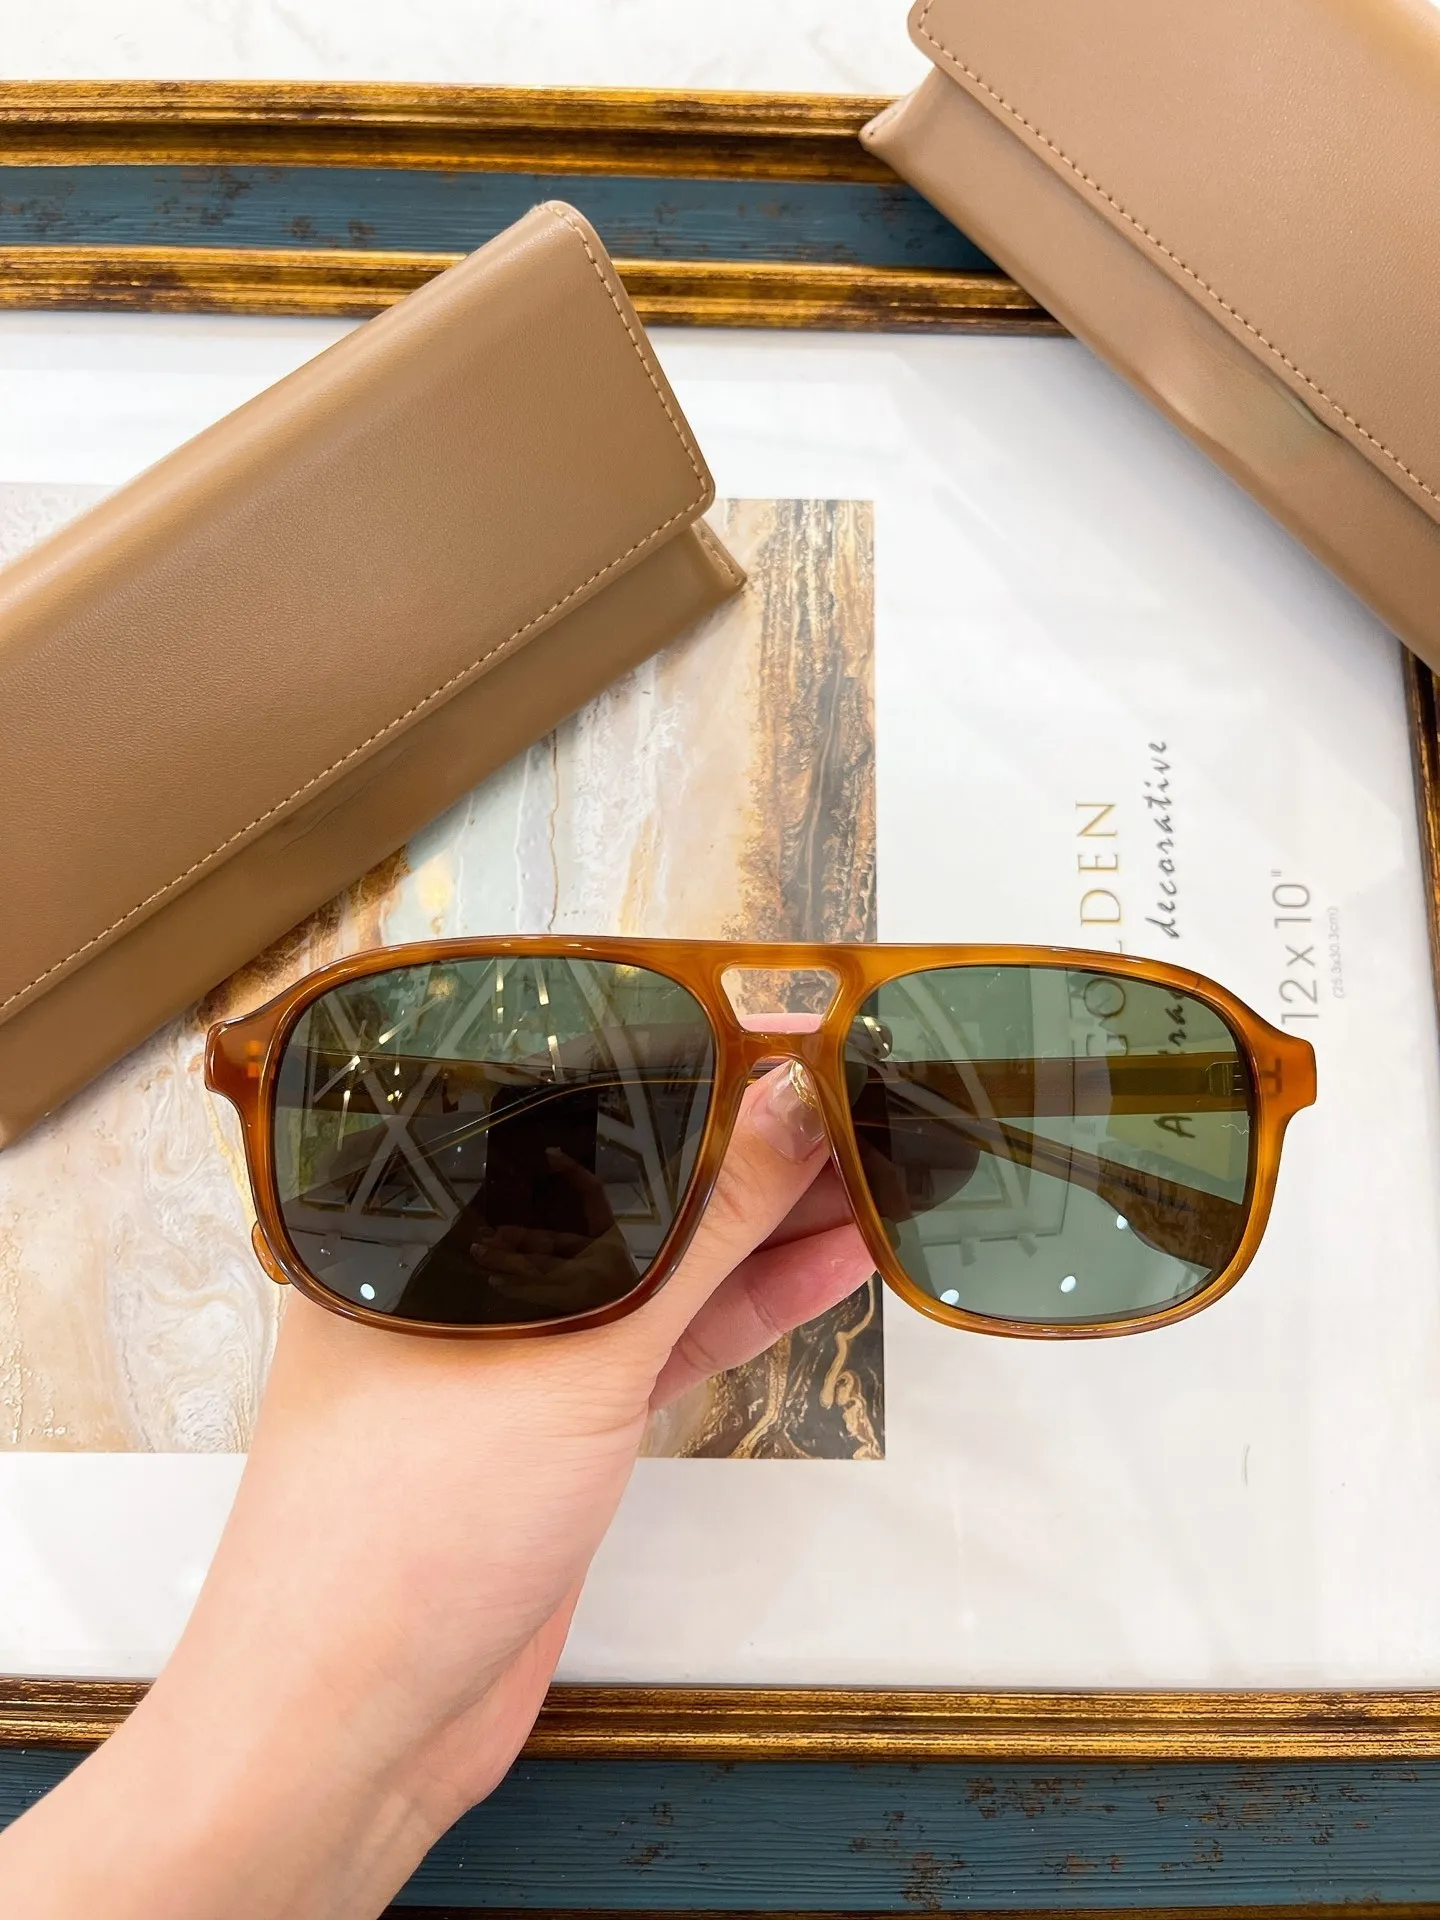 2022 New B Home Plate Fashion نظارات شمسية للرجال والنساء مع نظارات شمسية مزدوجة من أشعة الشمس المضادة للأحراف.